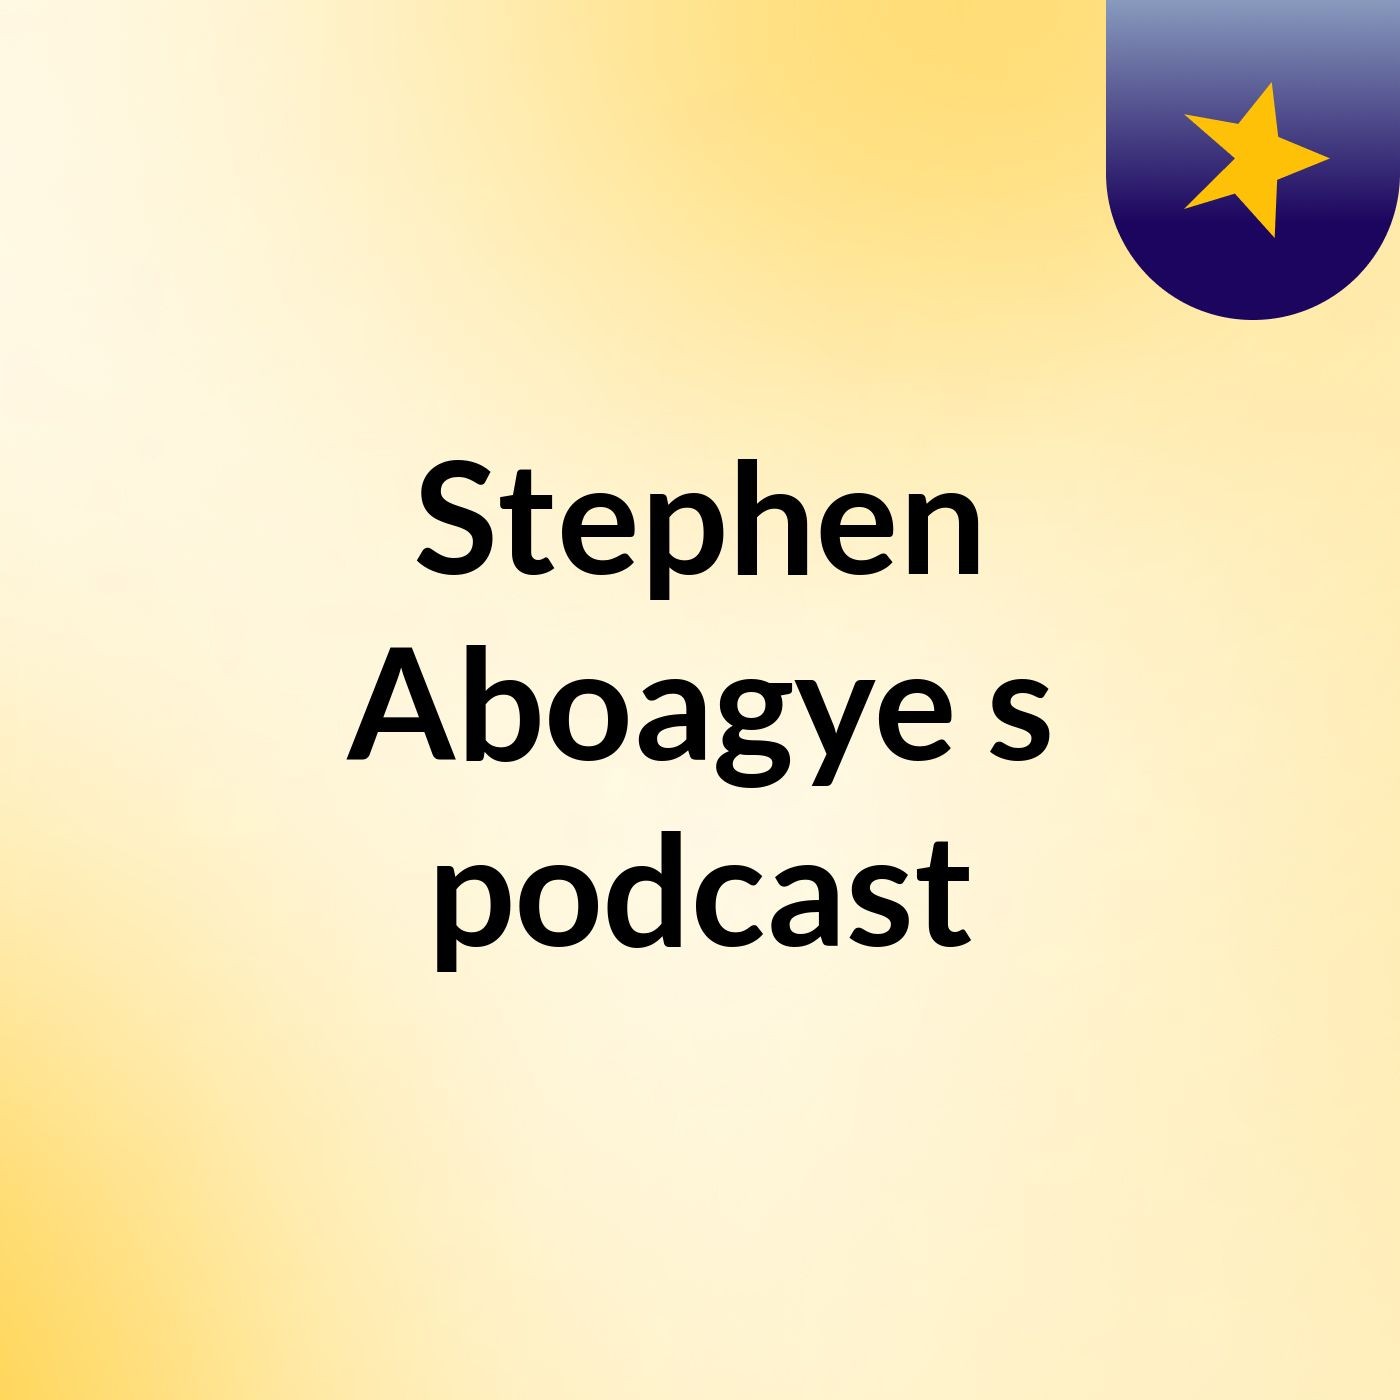 Stephen Aboagye's podcast